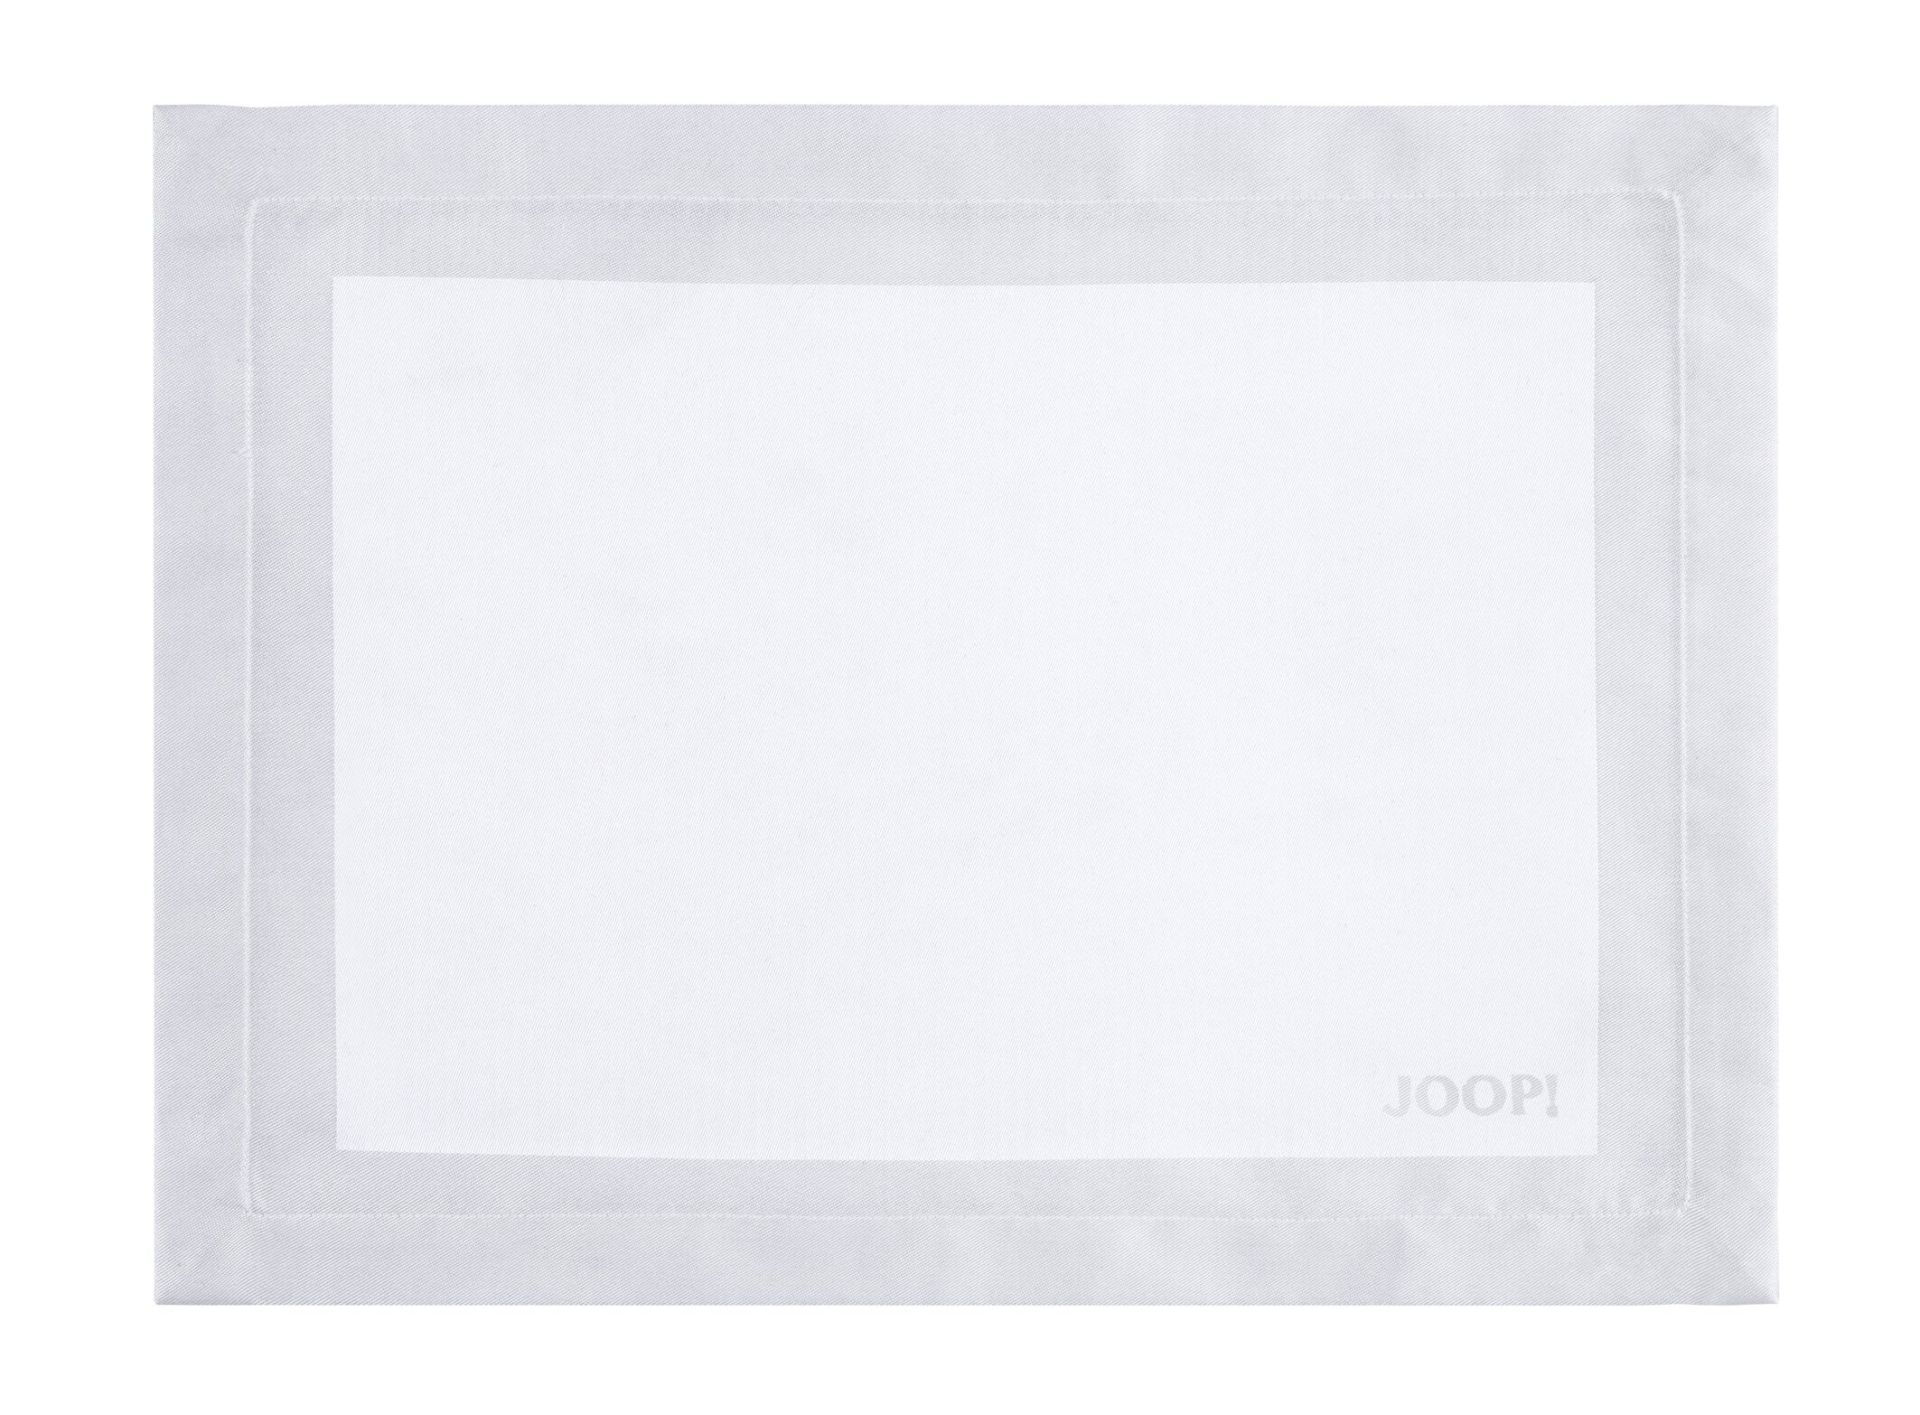 JOOP! Platzsets Signature weiß